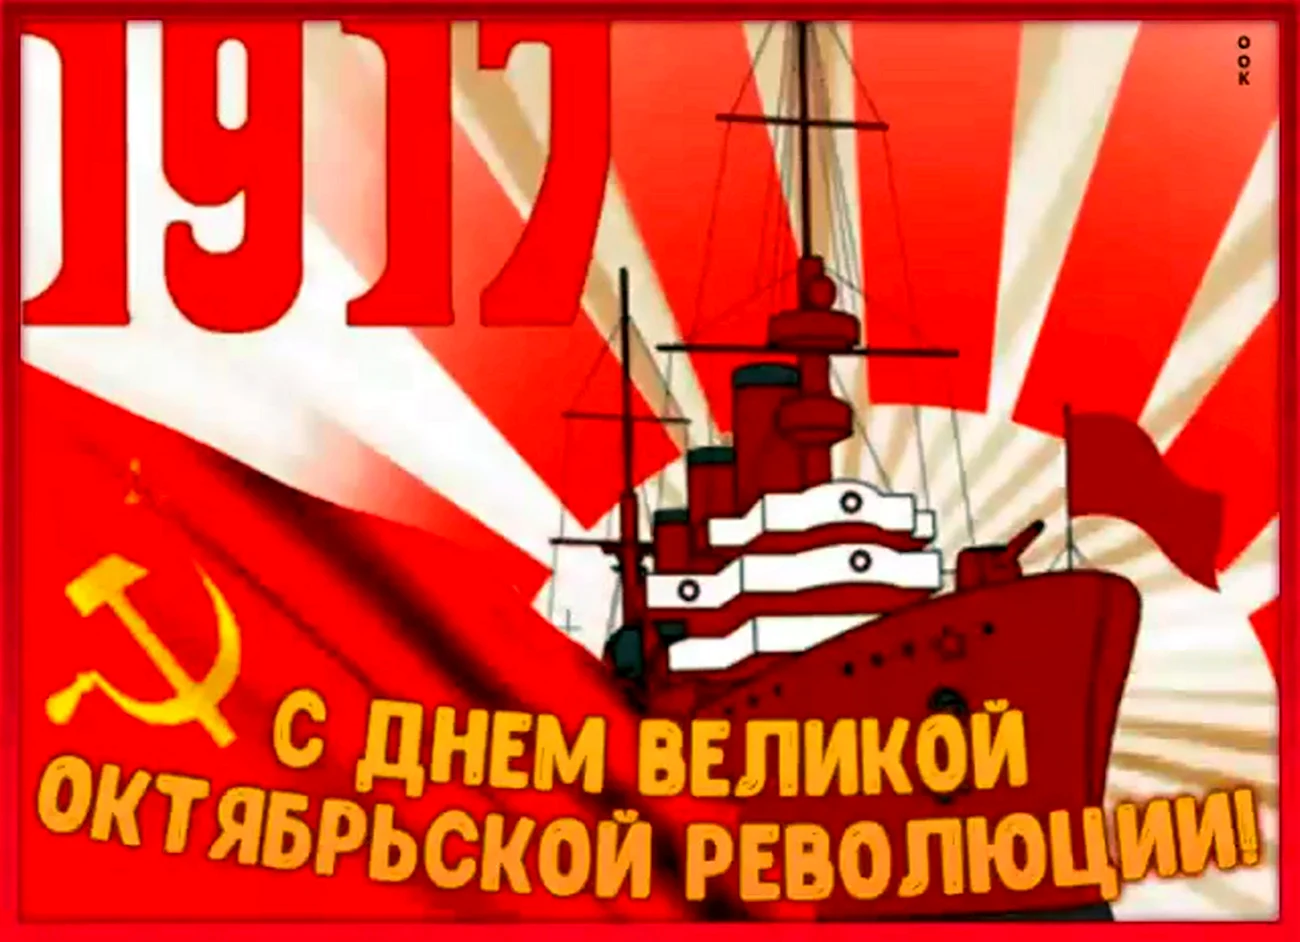 С праздником Великой Октябрьской социалистической революции. Картинка